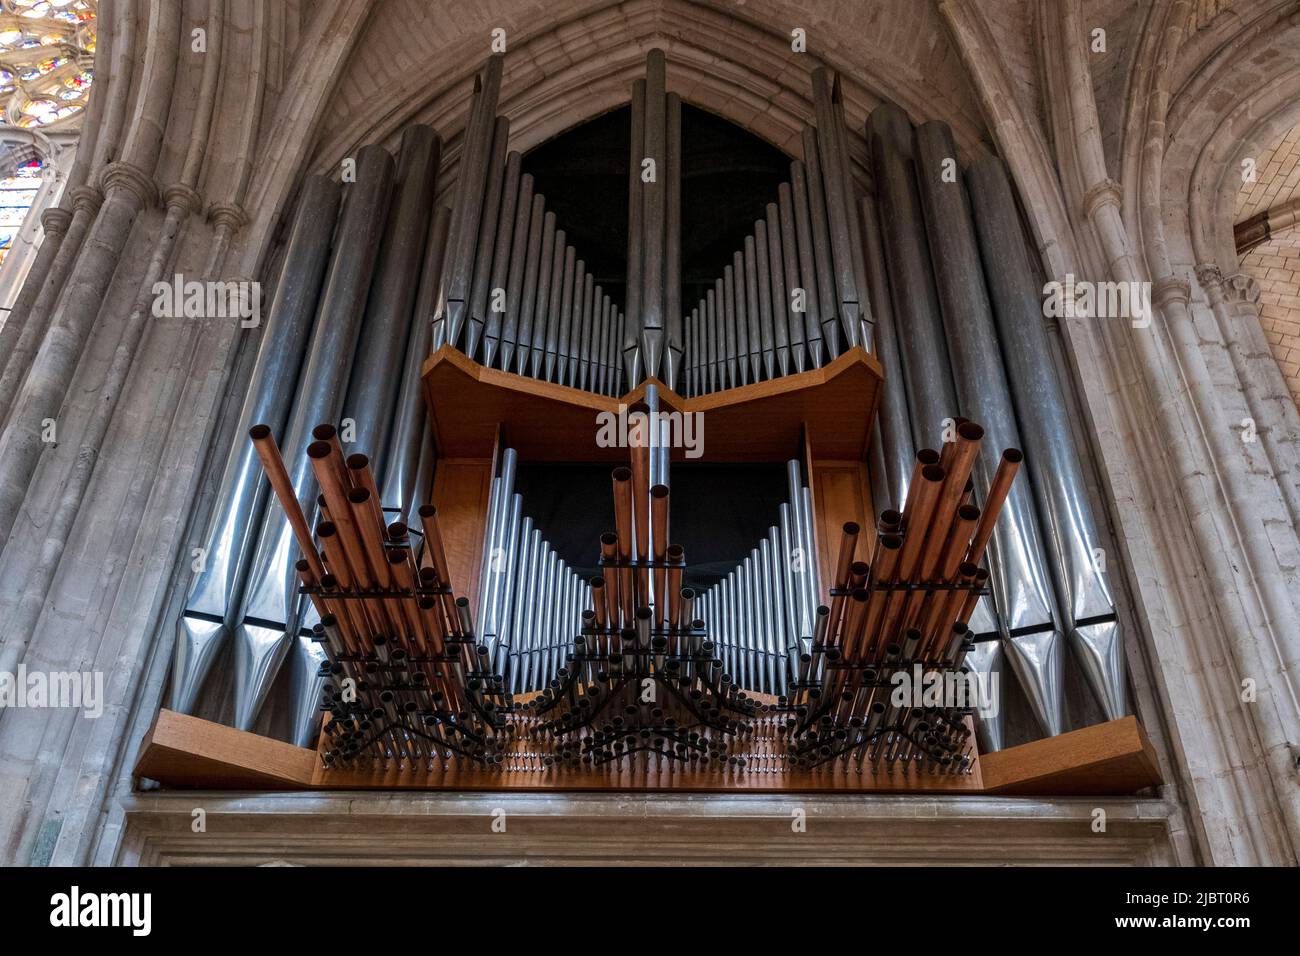 France, Yonne (89), Auxerre, cathédrale Saint-Etienne, nave, organ Stock Photo